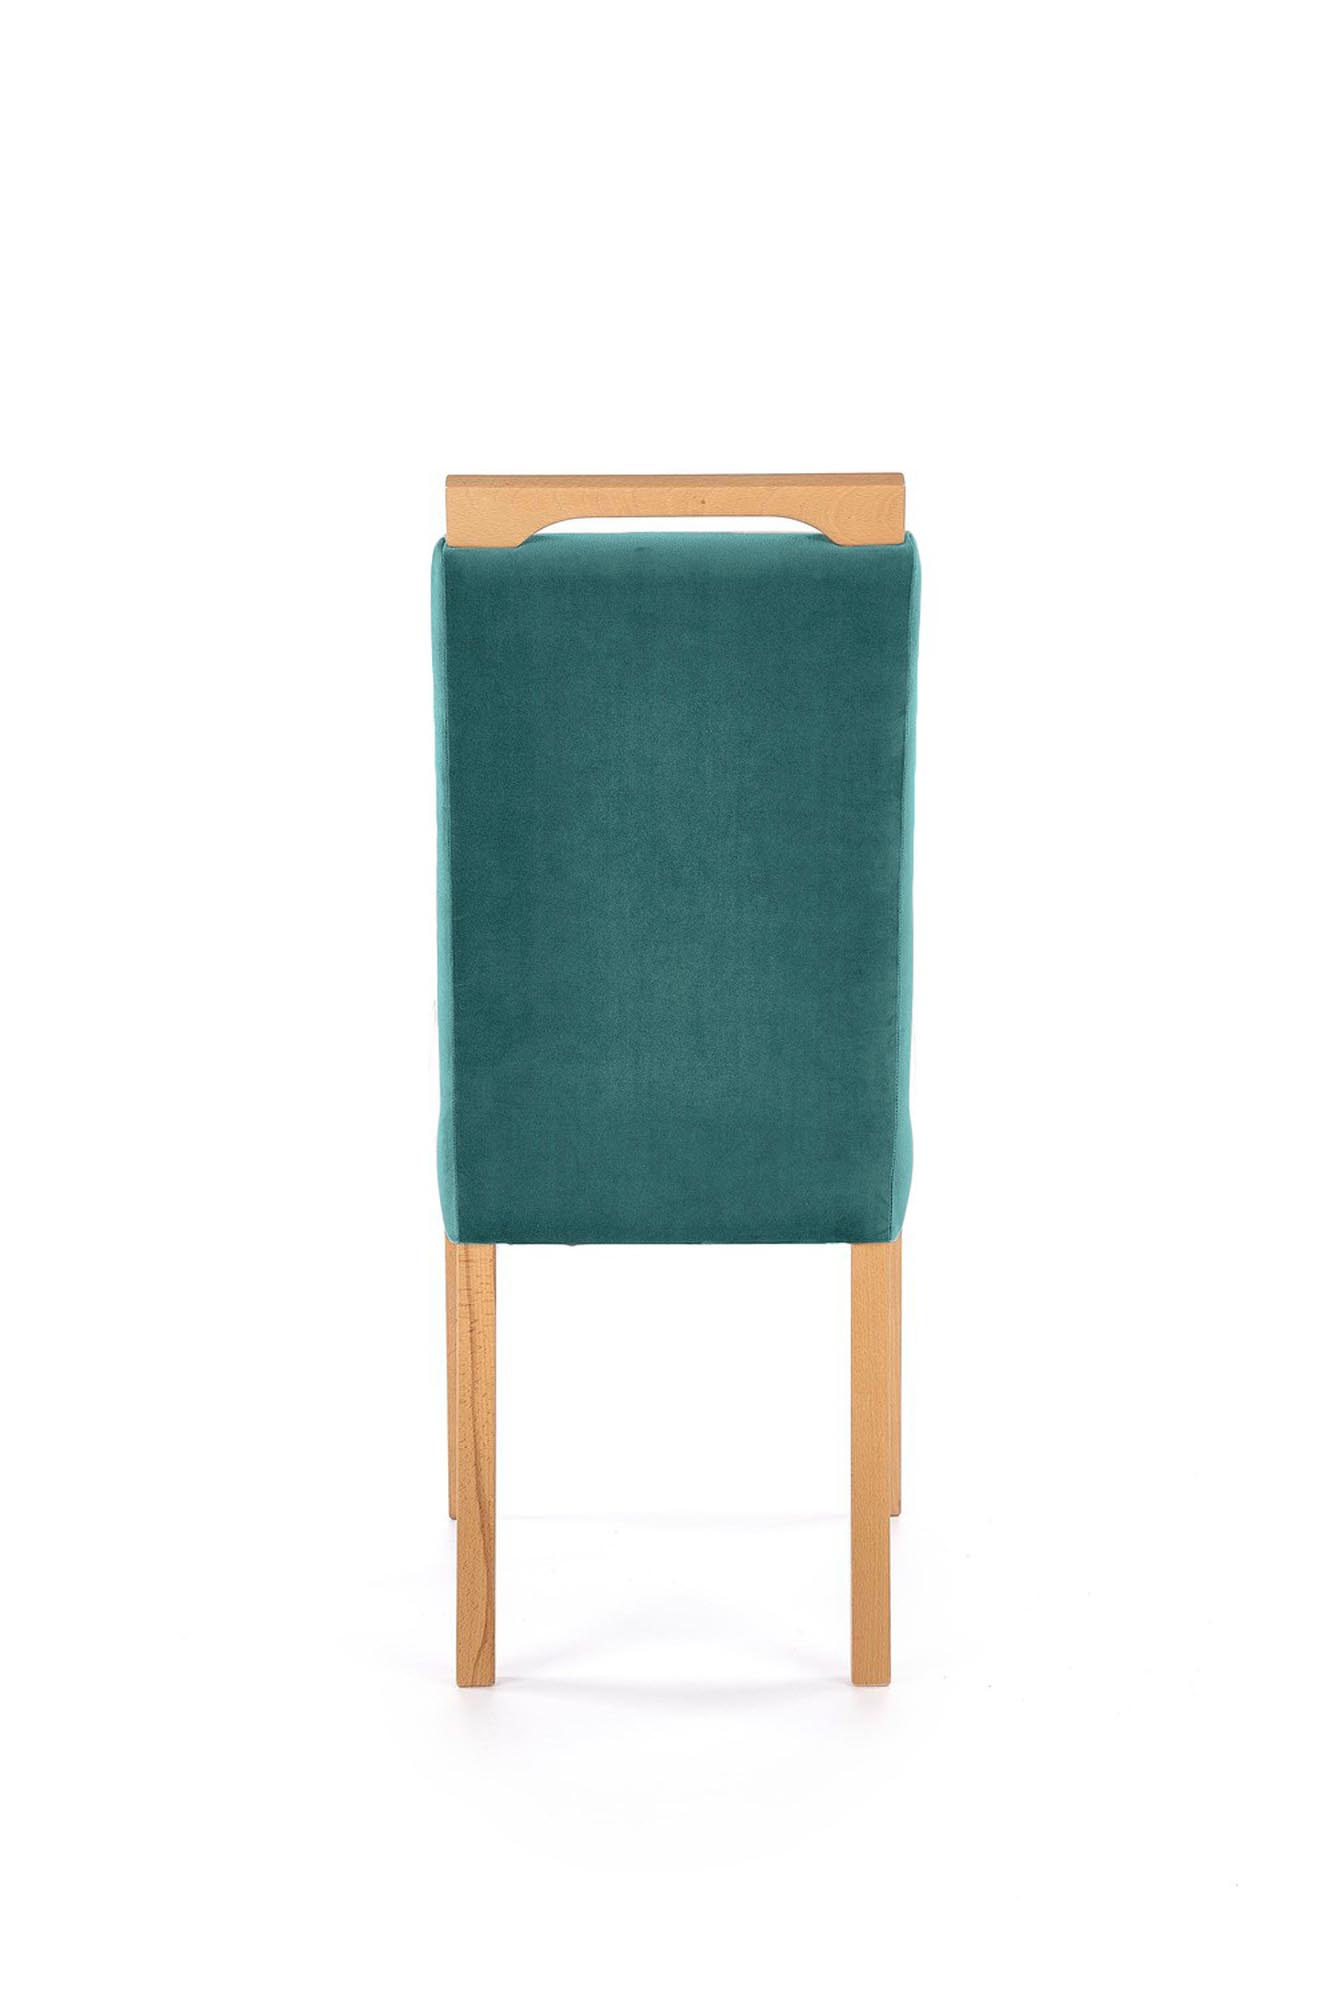 Krzesło tapicerowane Clarion - dąb miodowy / zielony welur Monolith 37 Krzesło tapicerowane Clarion - dąb miodowy / zielony welur Monolith 37